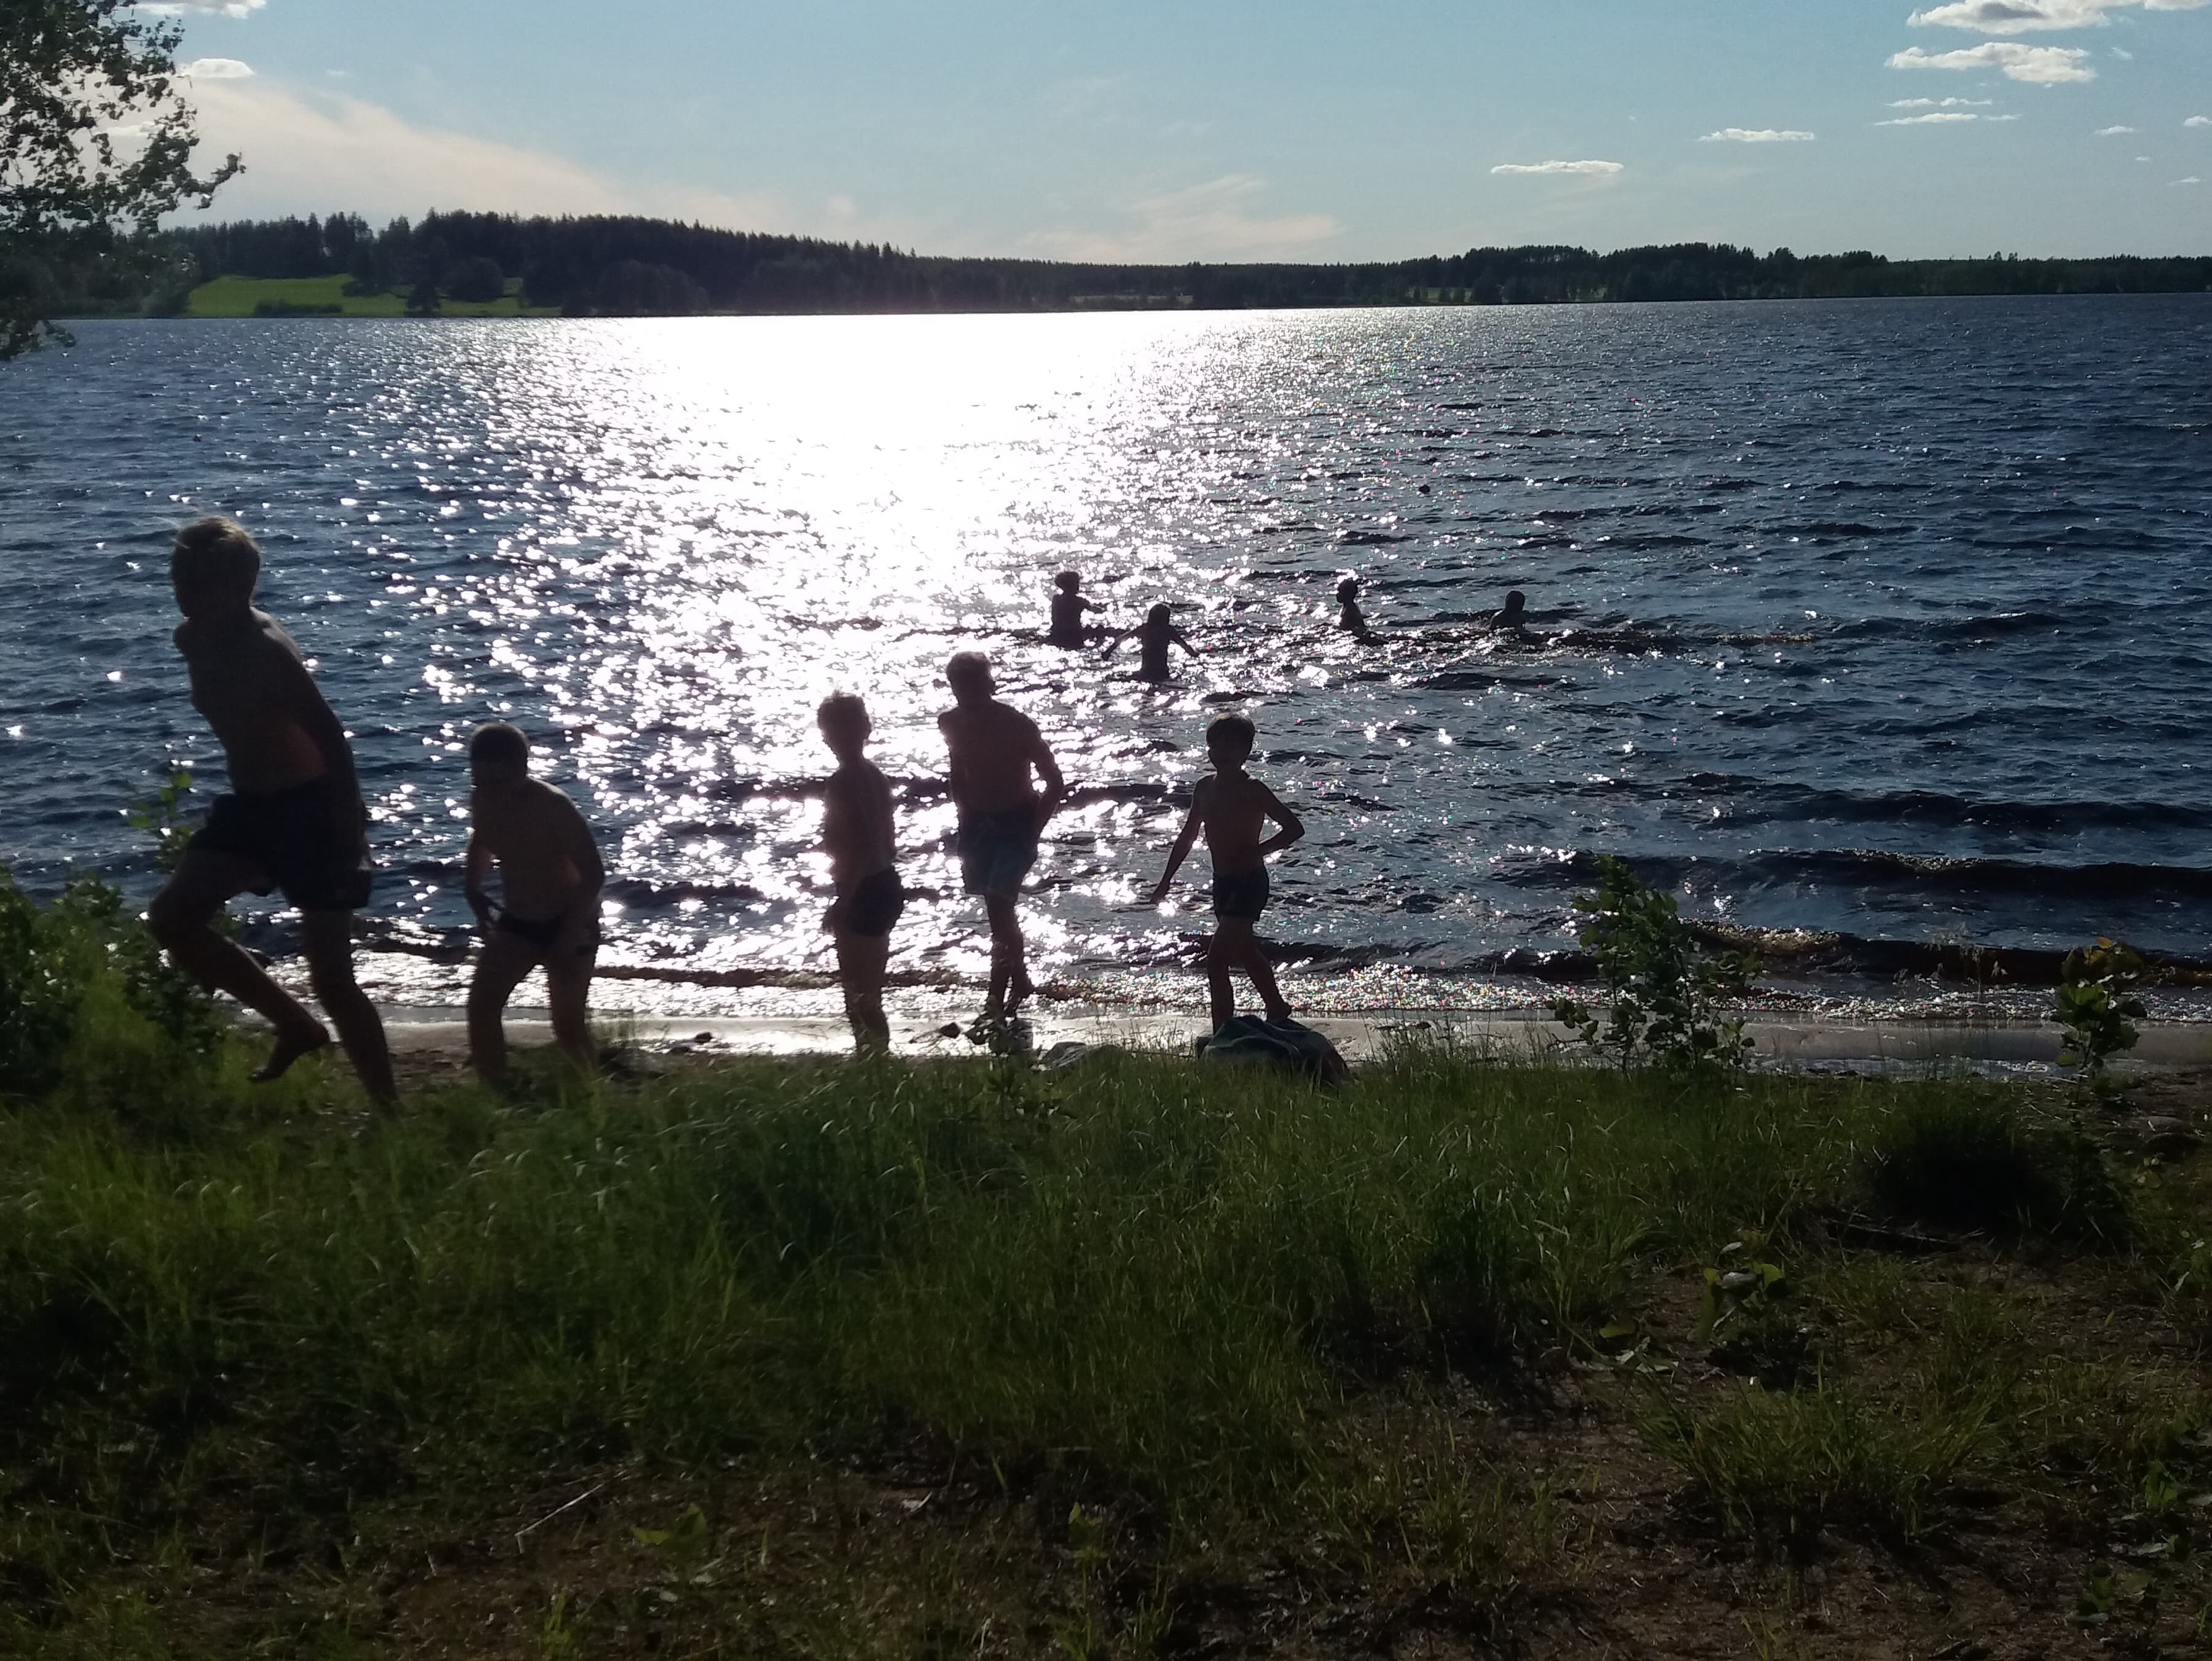 Lapsia menossa uimaan, aurinko kimmaltaa järven pinnasta.